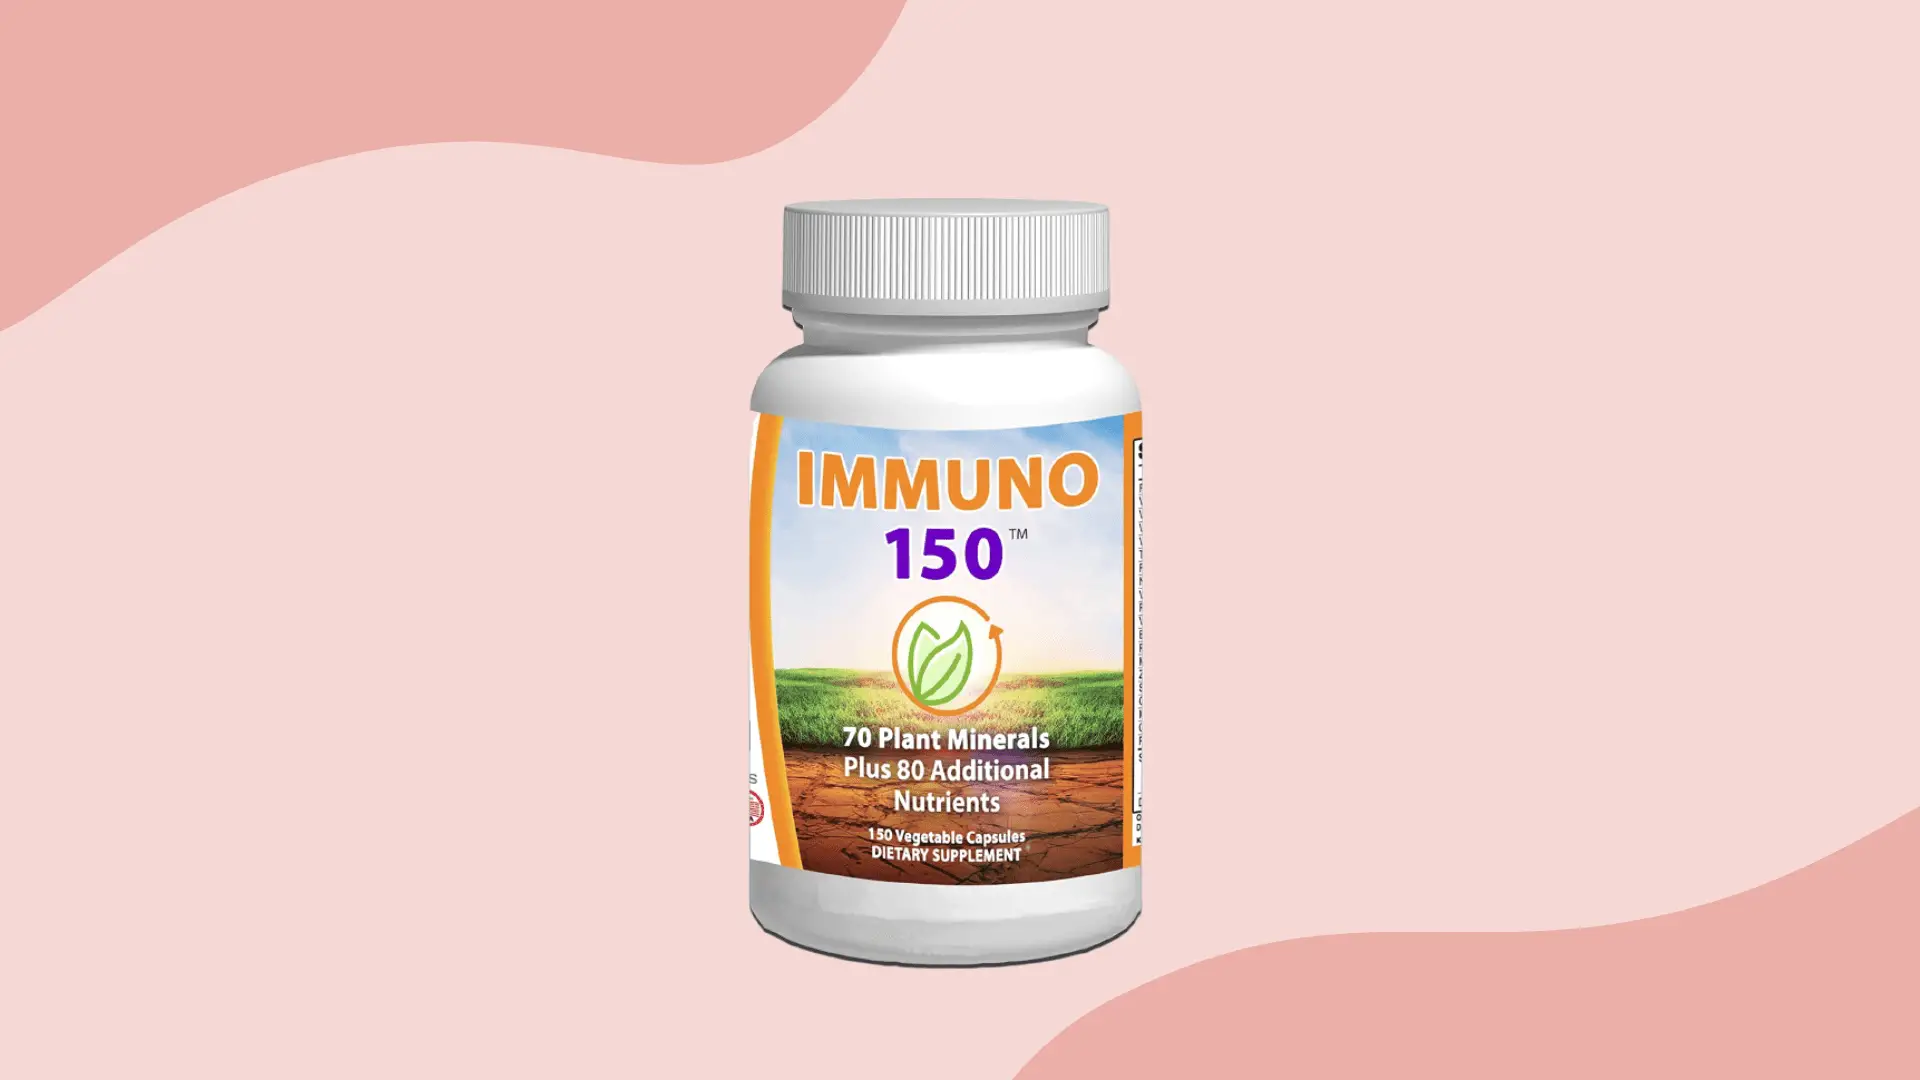 Immuno 150 Supplement in Center